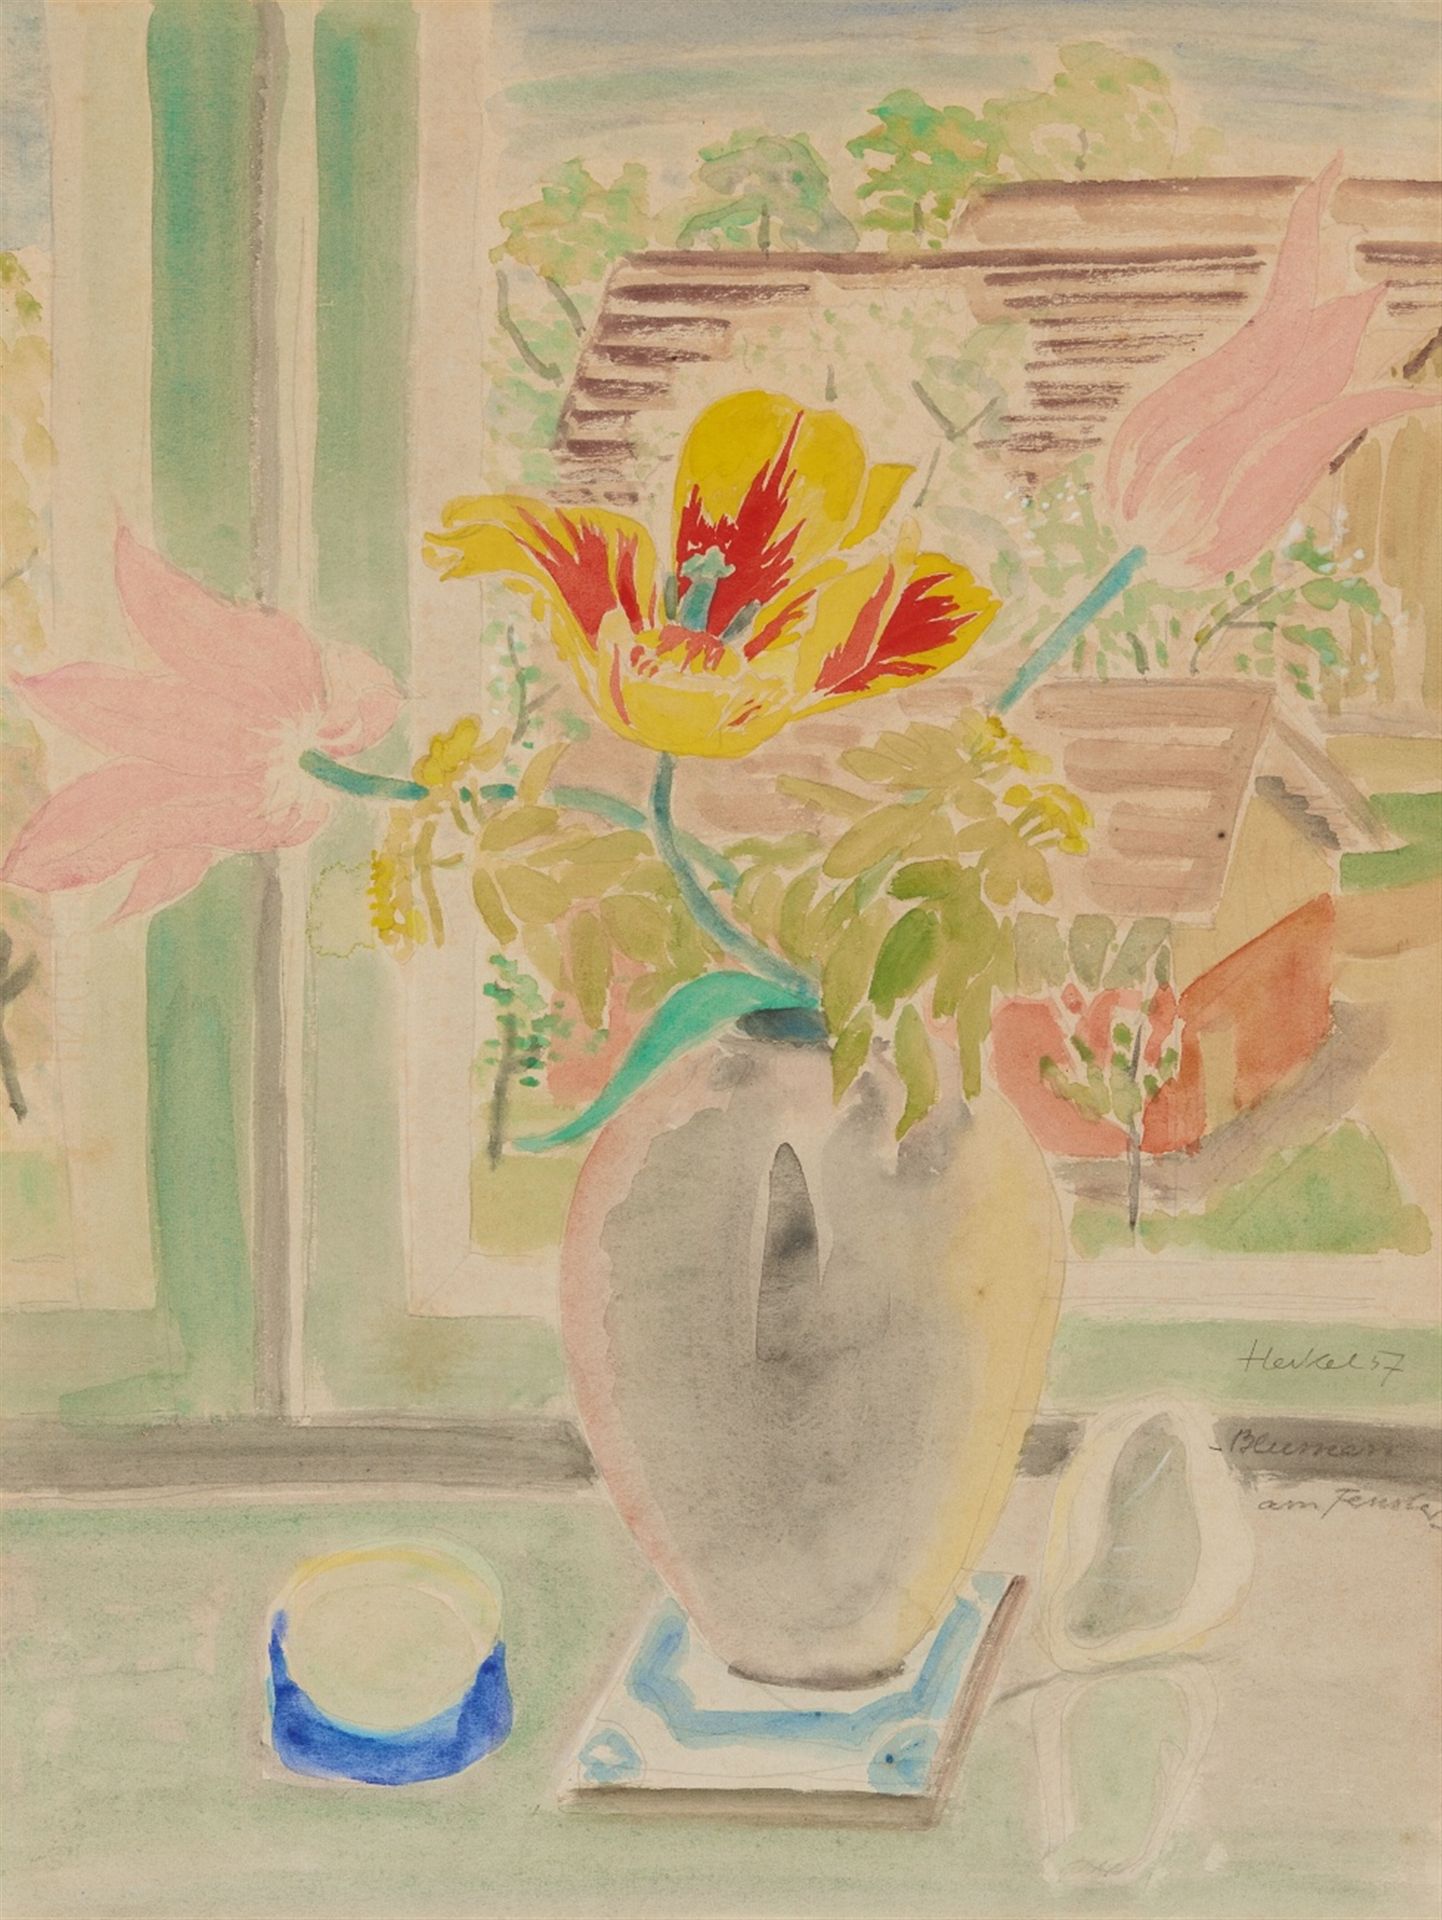 Erich Heckel, Blumen am Fenster